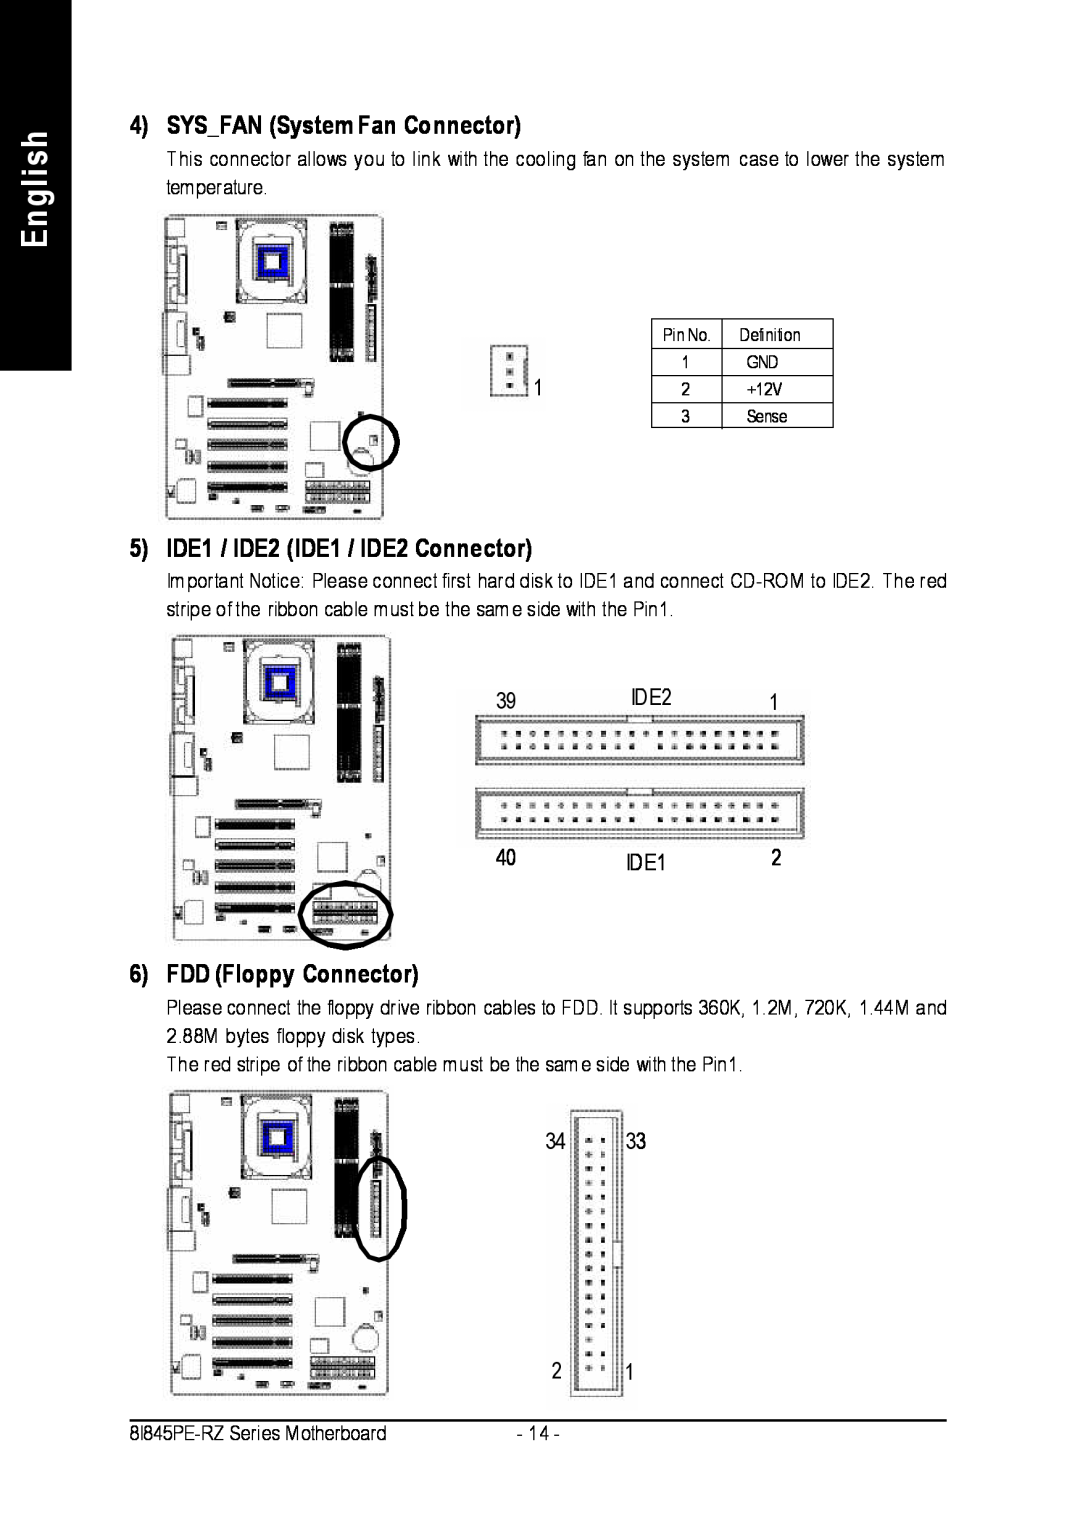 Intel 8I845PE-RZ English, SYSFAN System Fan Connector, 5 IDE1 / IDE2 IDE1 / IDE2 Connector, FDD Floppy Connector, 40IDE12 